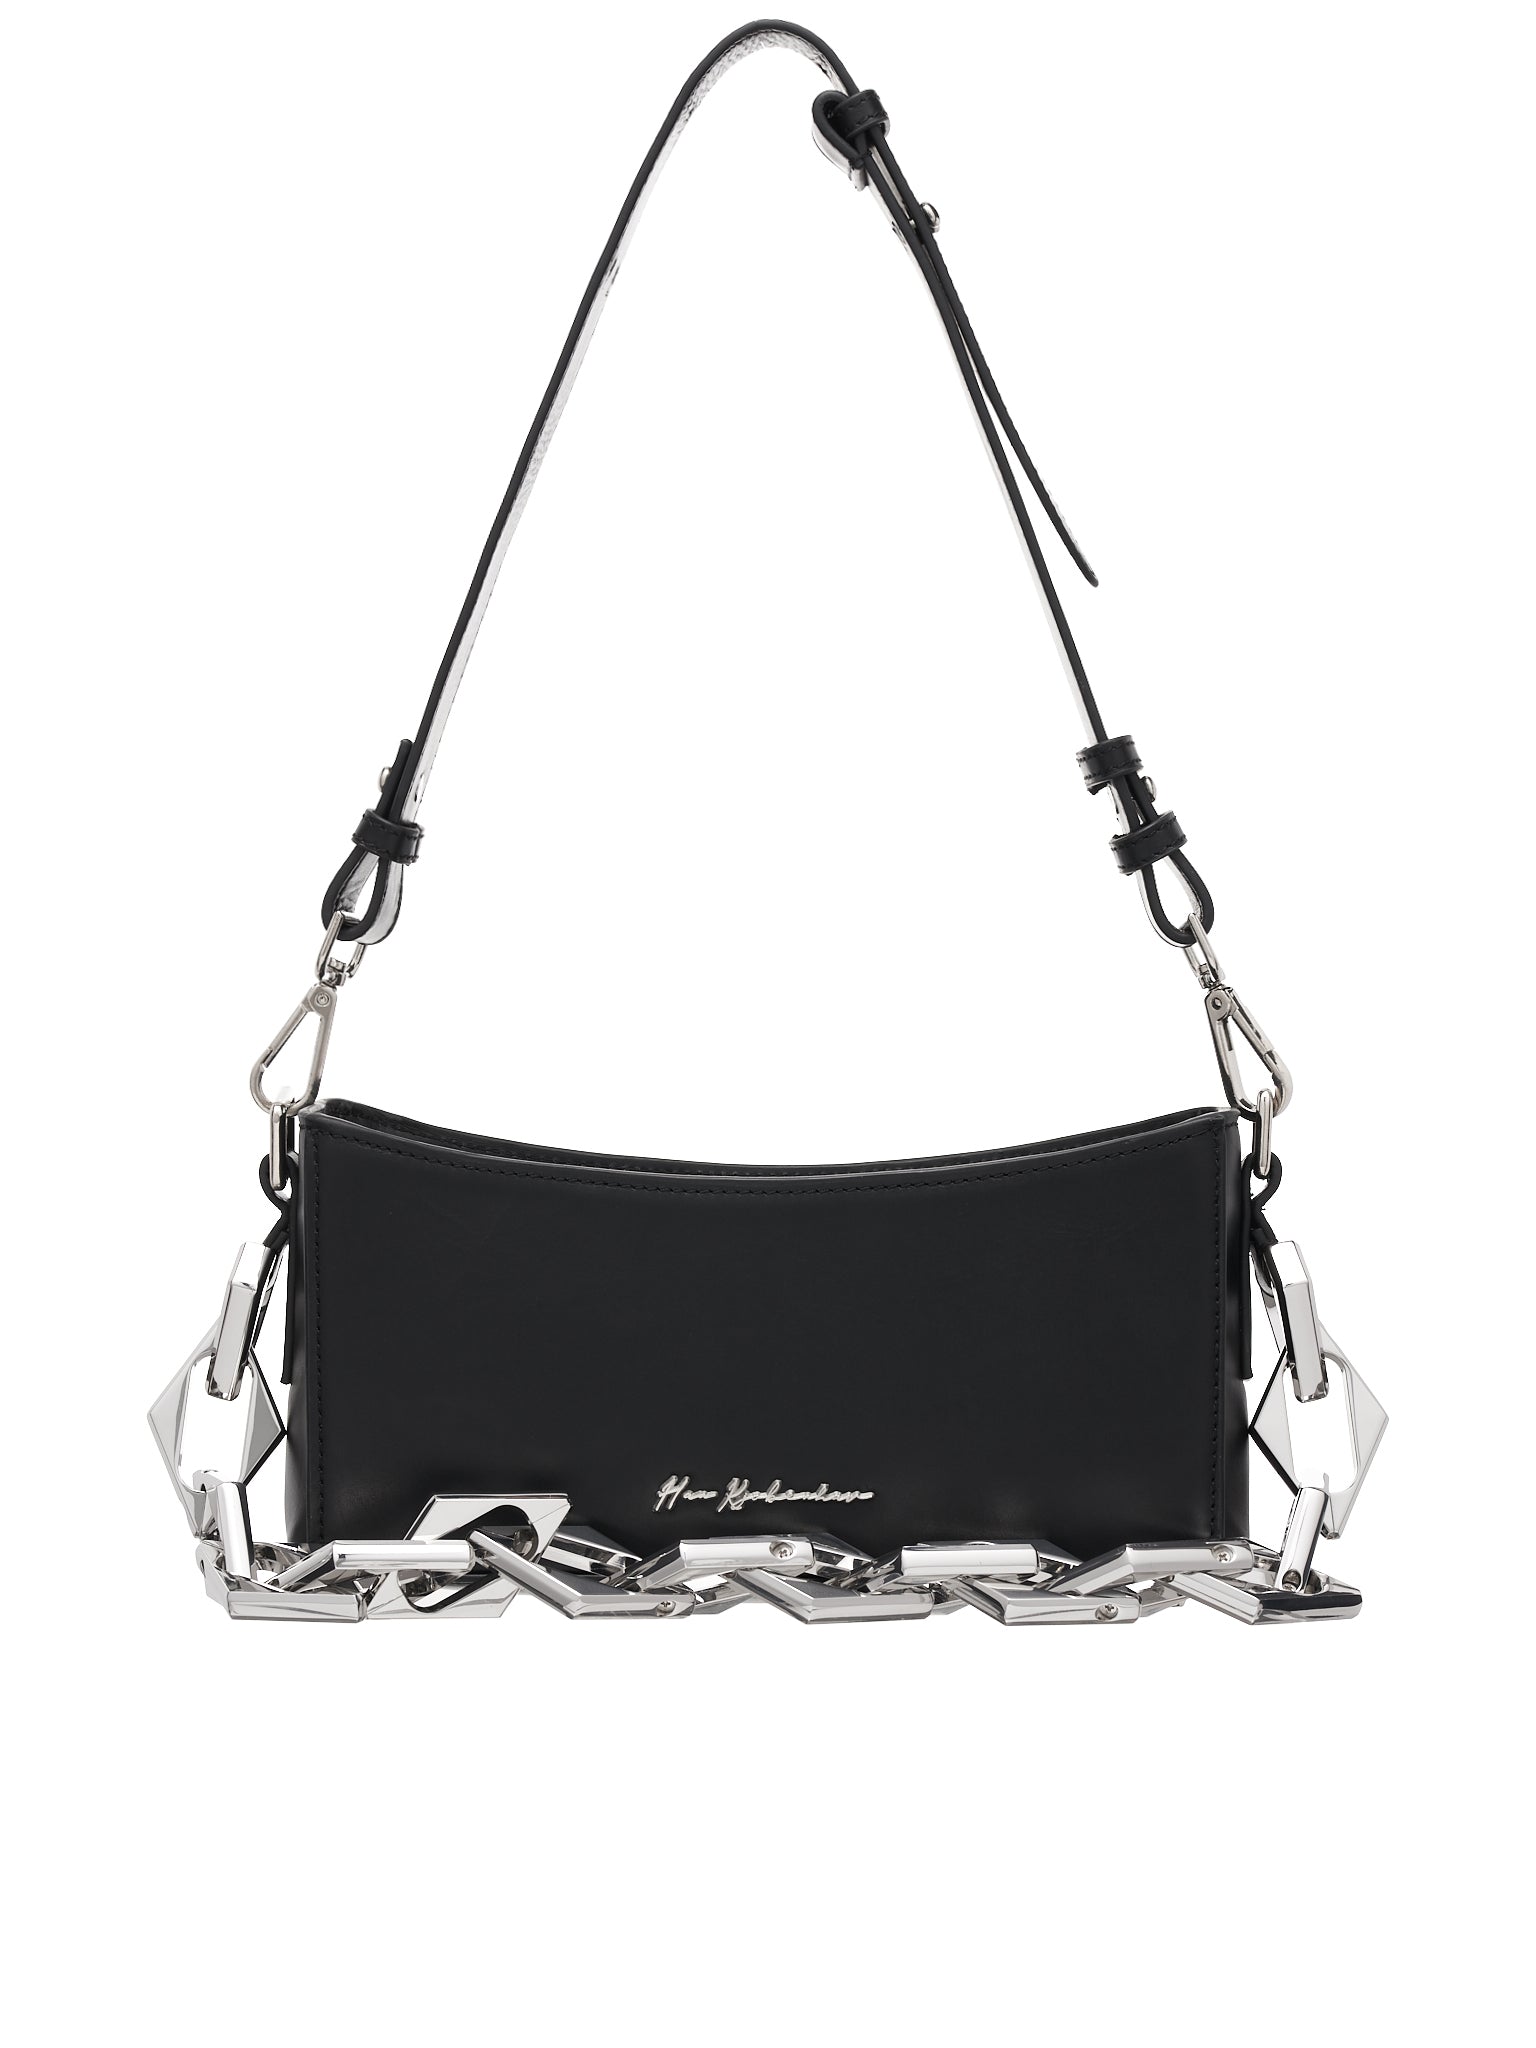 Diamond Chain Bag (A-132645-BLACK)